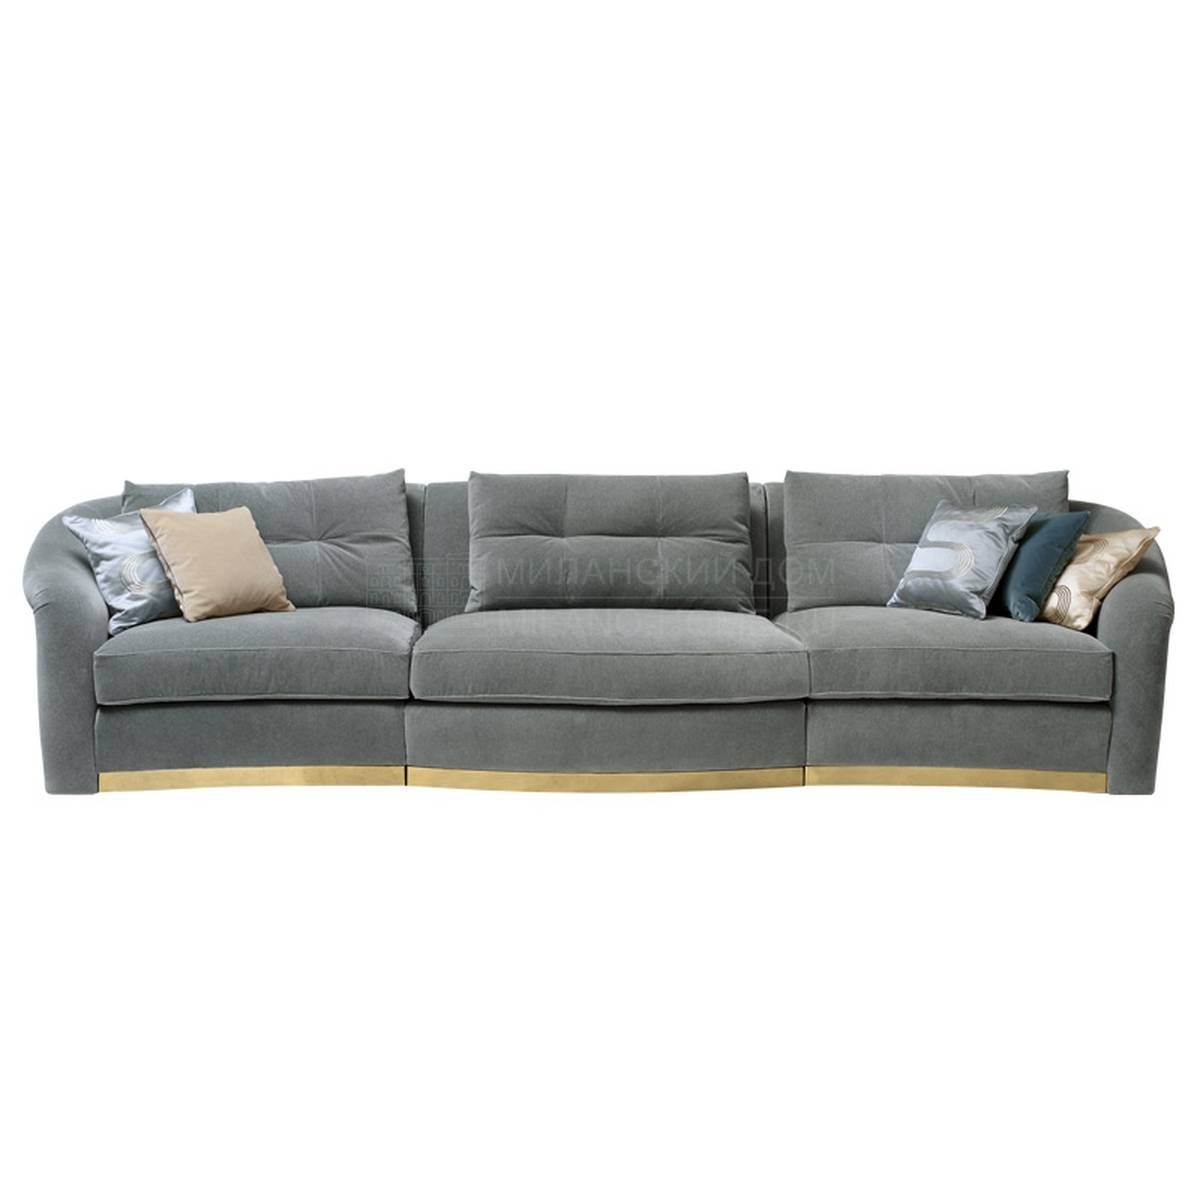 Модульный диван Madame 2/ sofa из Италии фабрики SOFTHOUSE